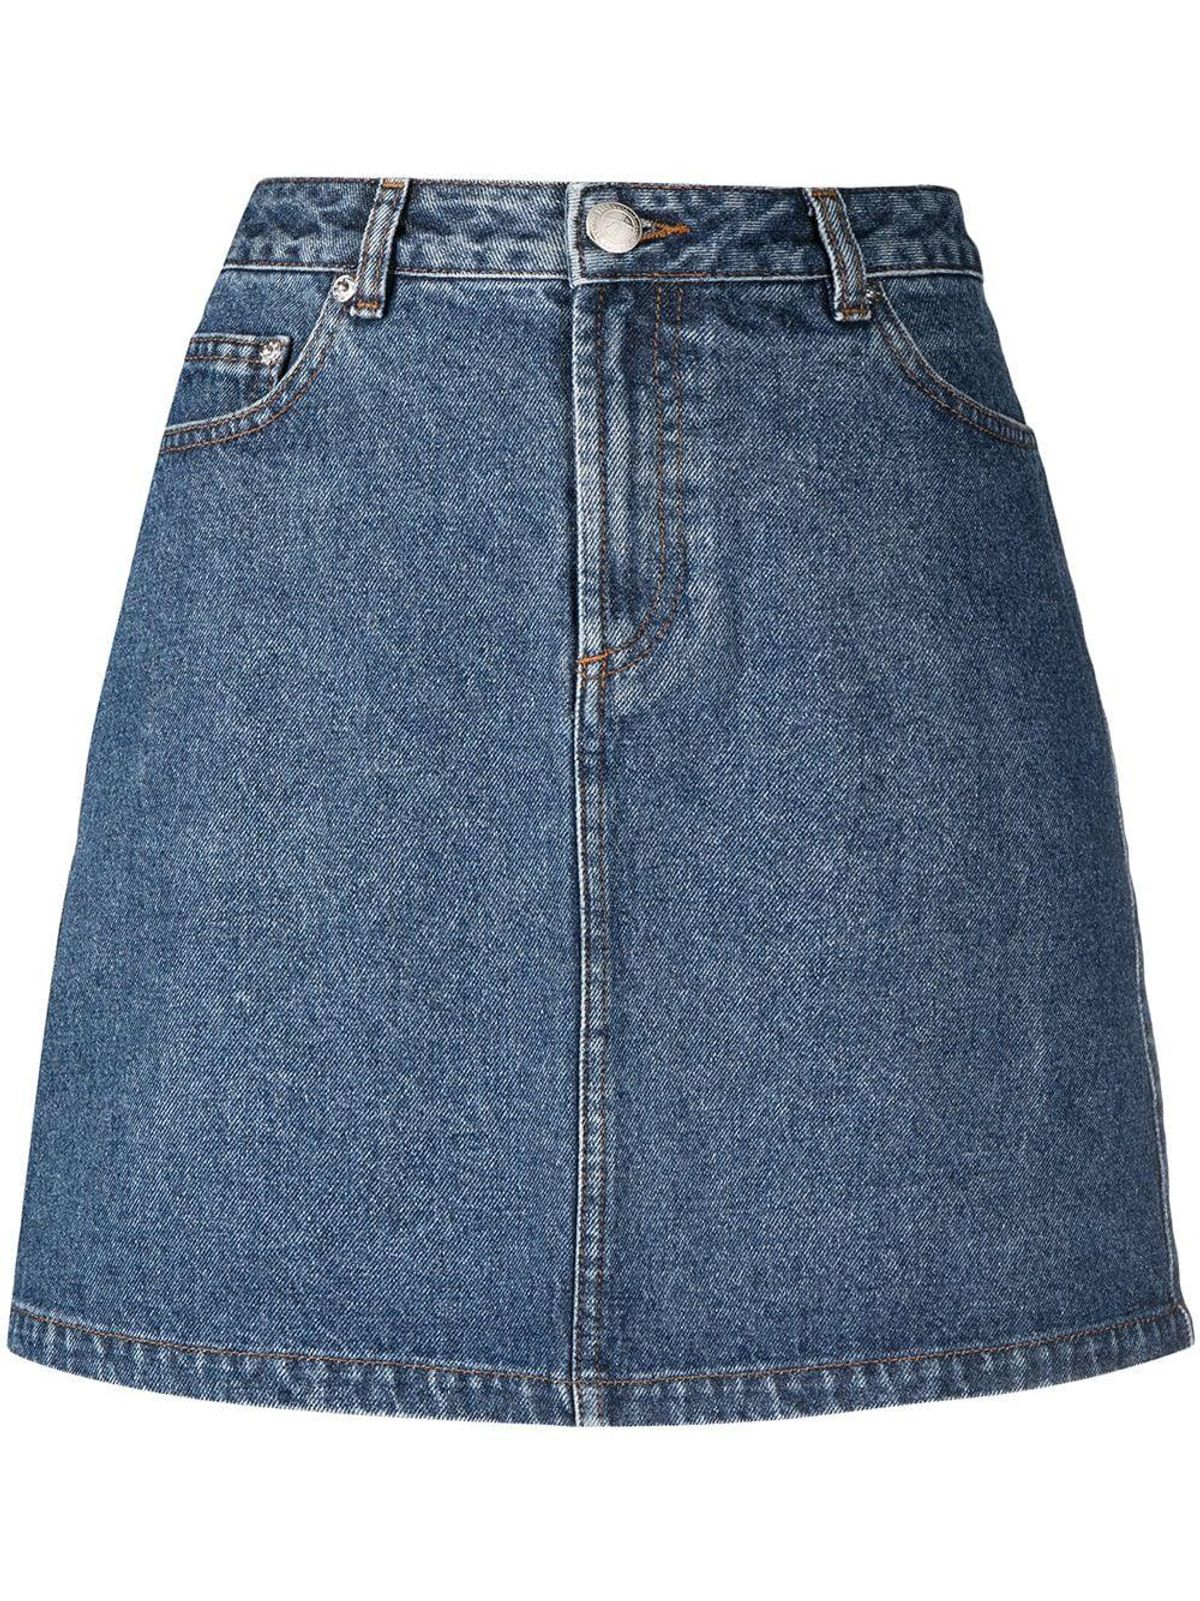 A-Line Cotton Denim Skirt